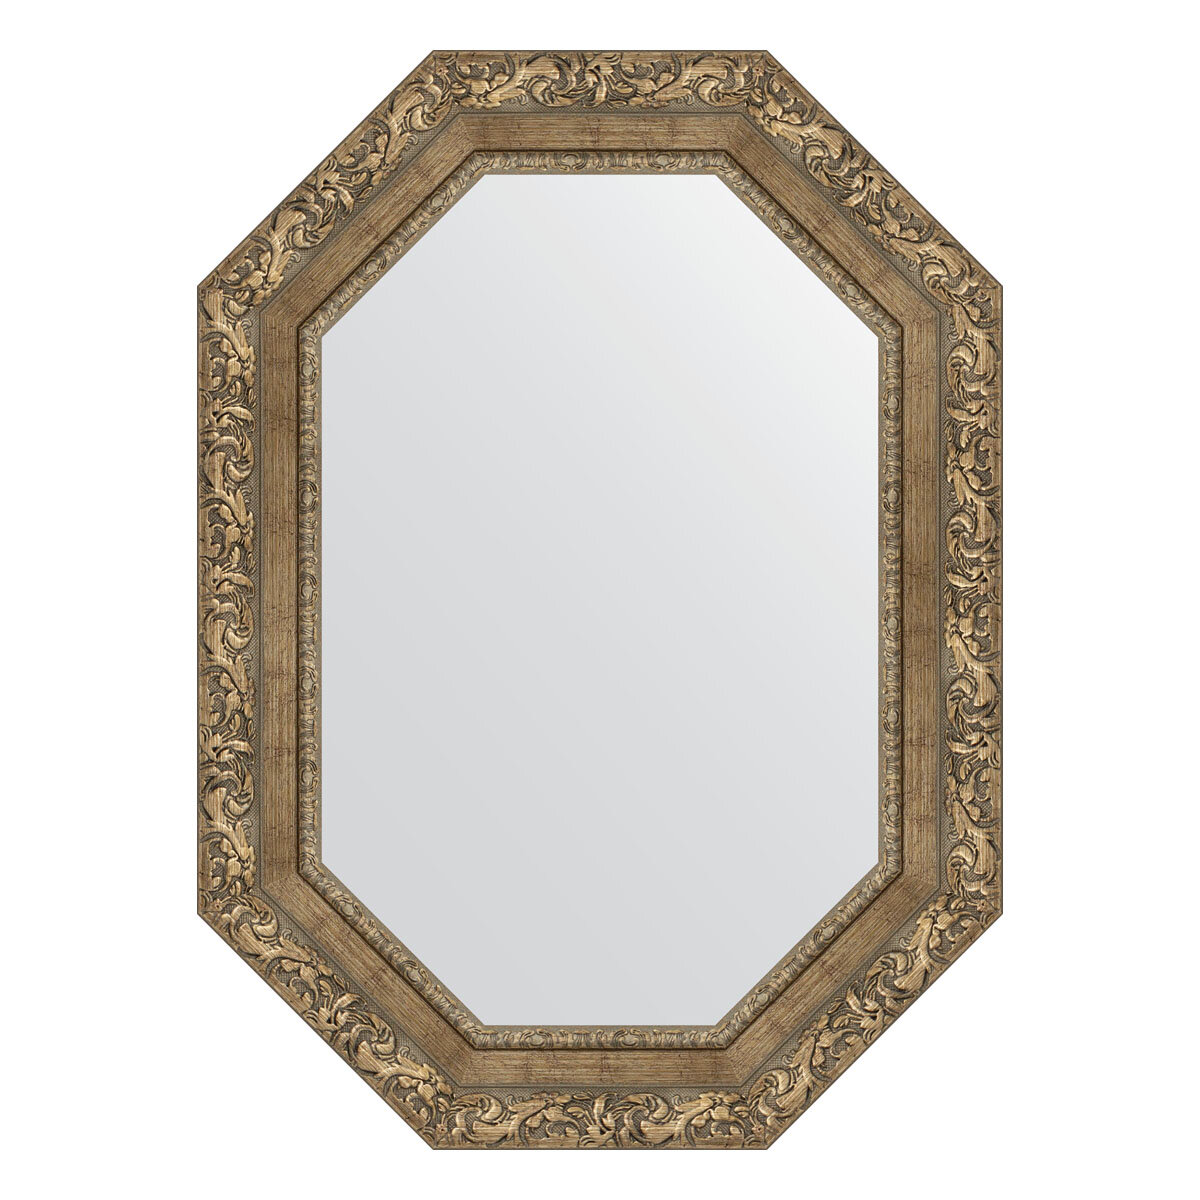 Зеркало настенное Polygon EVOFORM в багетной раме виньетка античная латунь, 55х75 см, для гостиной, прихожей, спальни и ванной комнаты, BY 7157